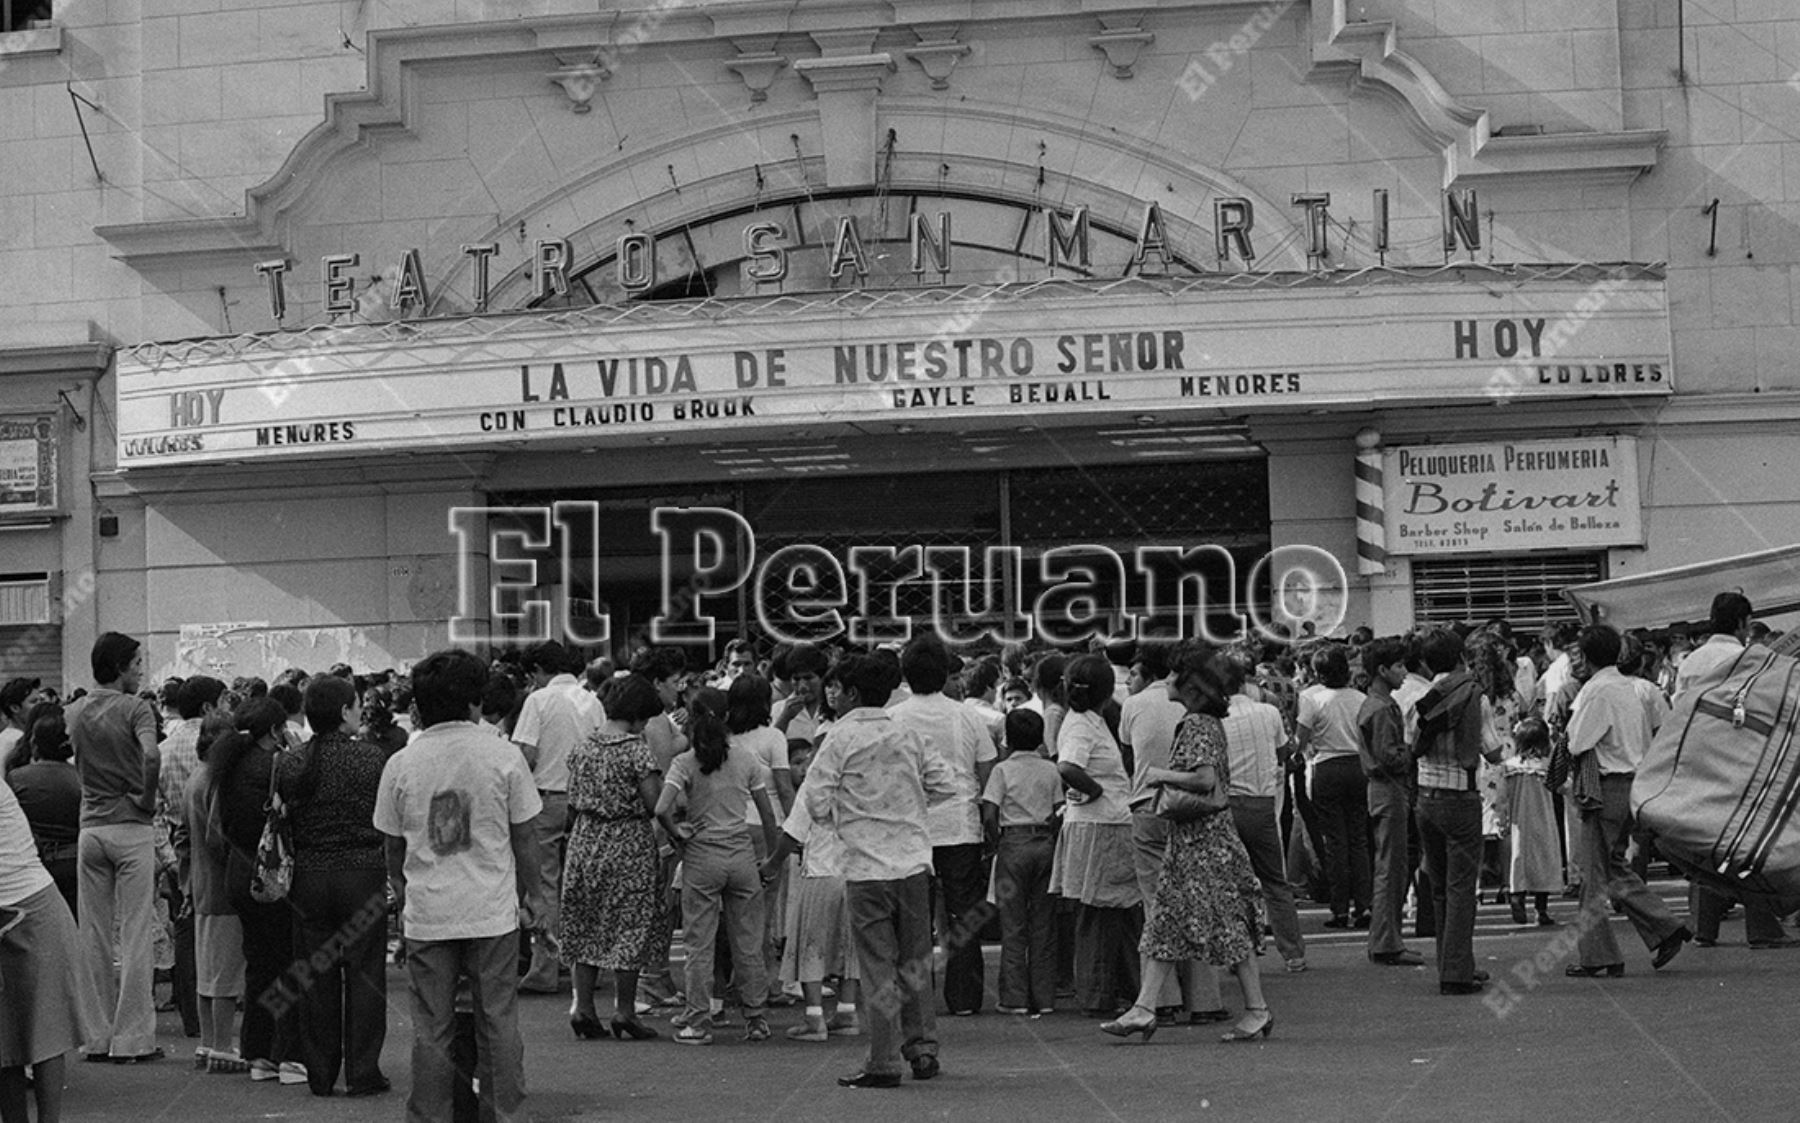 Lima - 17 abril 1981 / Limeños asisten a los cines en Semana Santa. La película "La vida de nuestro Señor" en el cine San Martín captó gran interés en Viernes Santo. Foto: Archivo Histórico de El Peruano /  Alejandro Aguirre